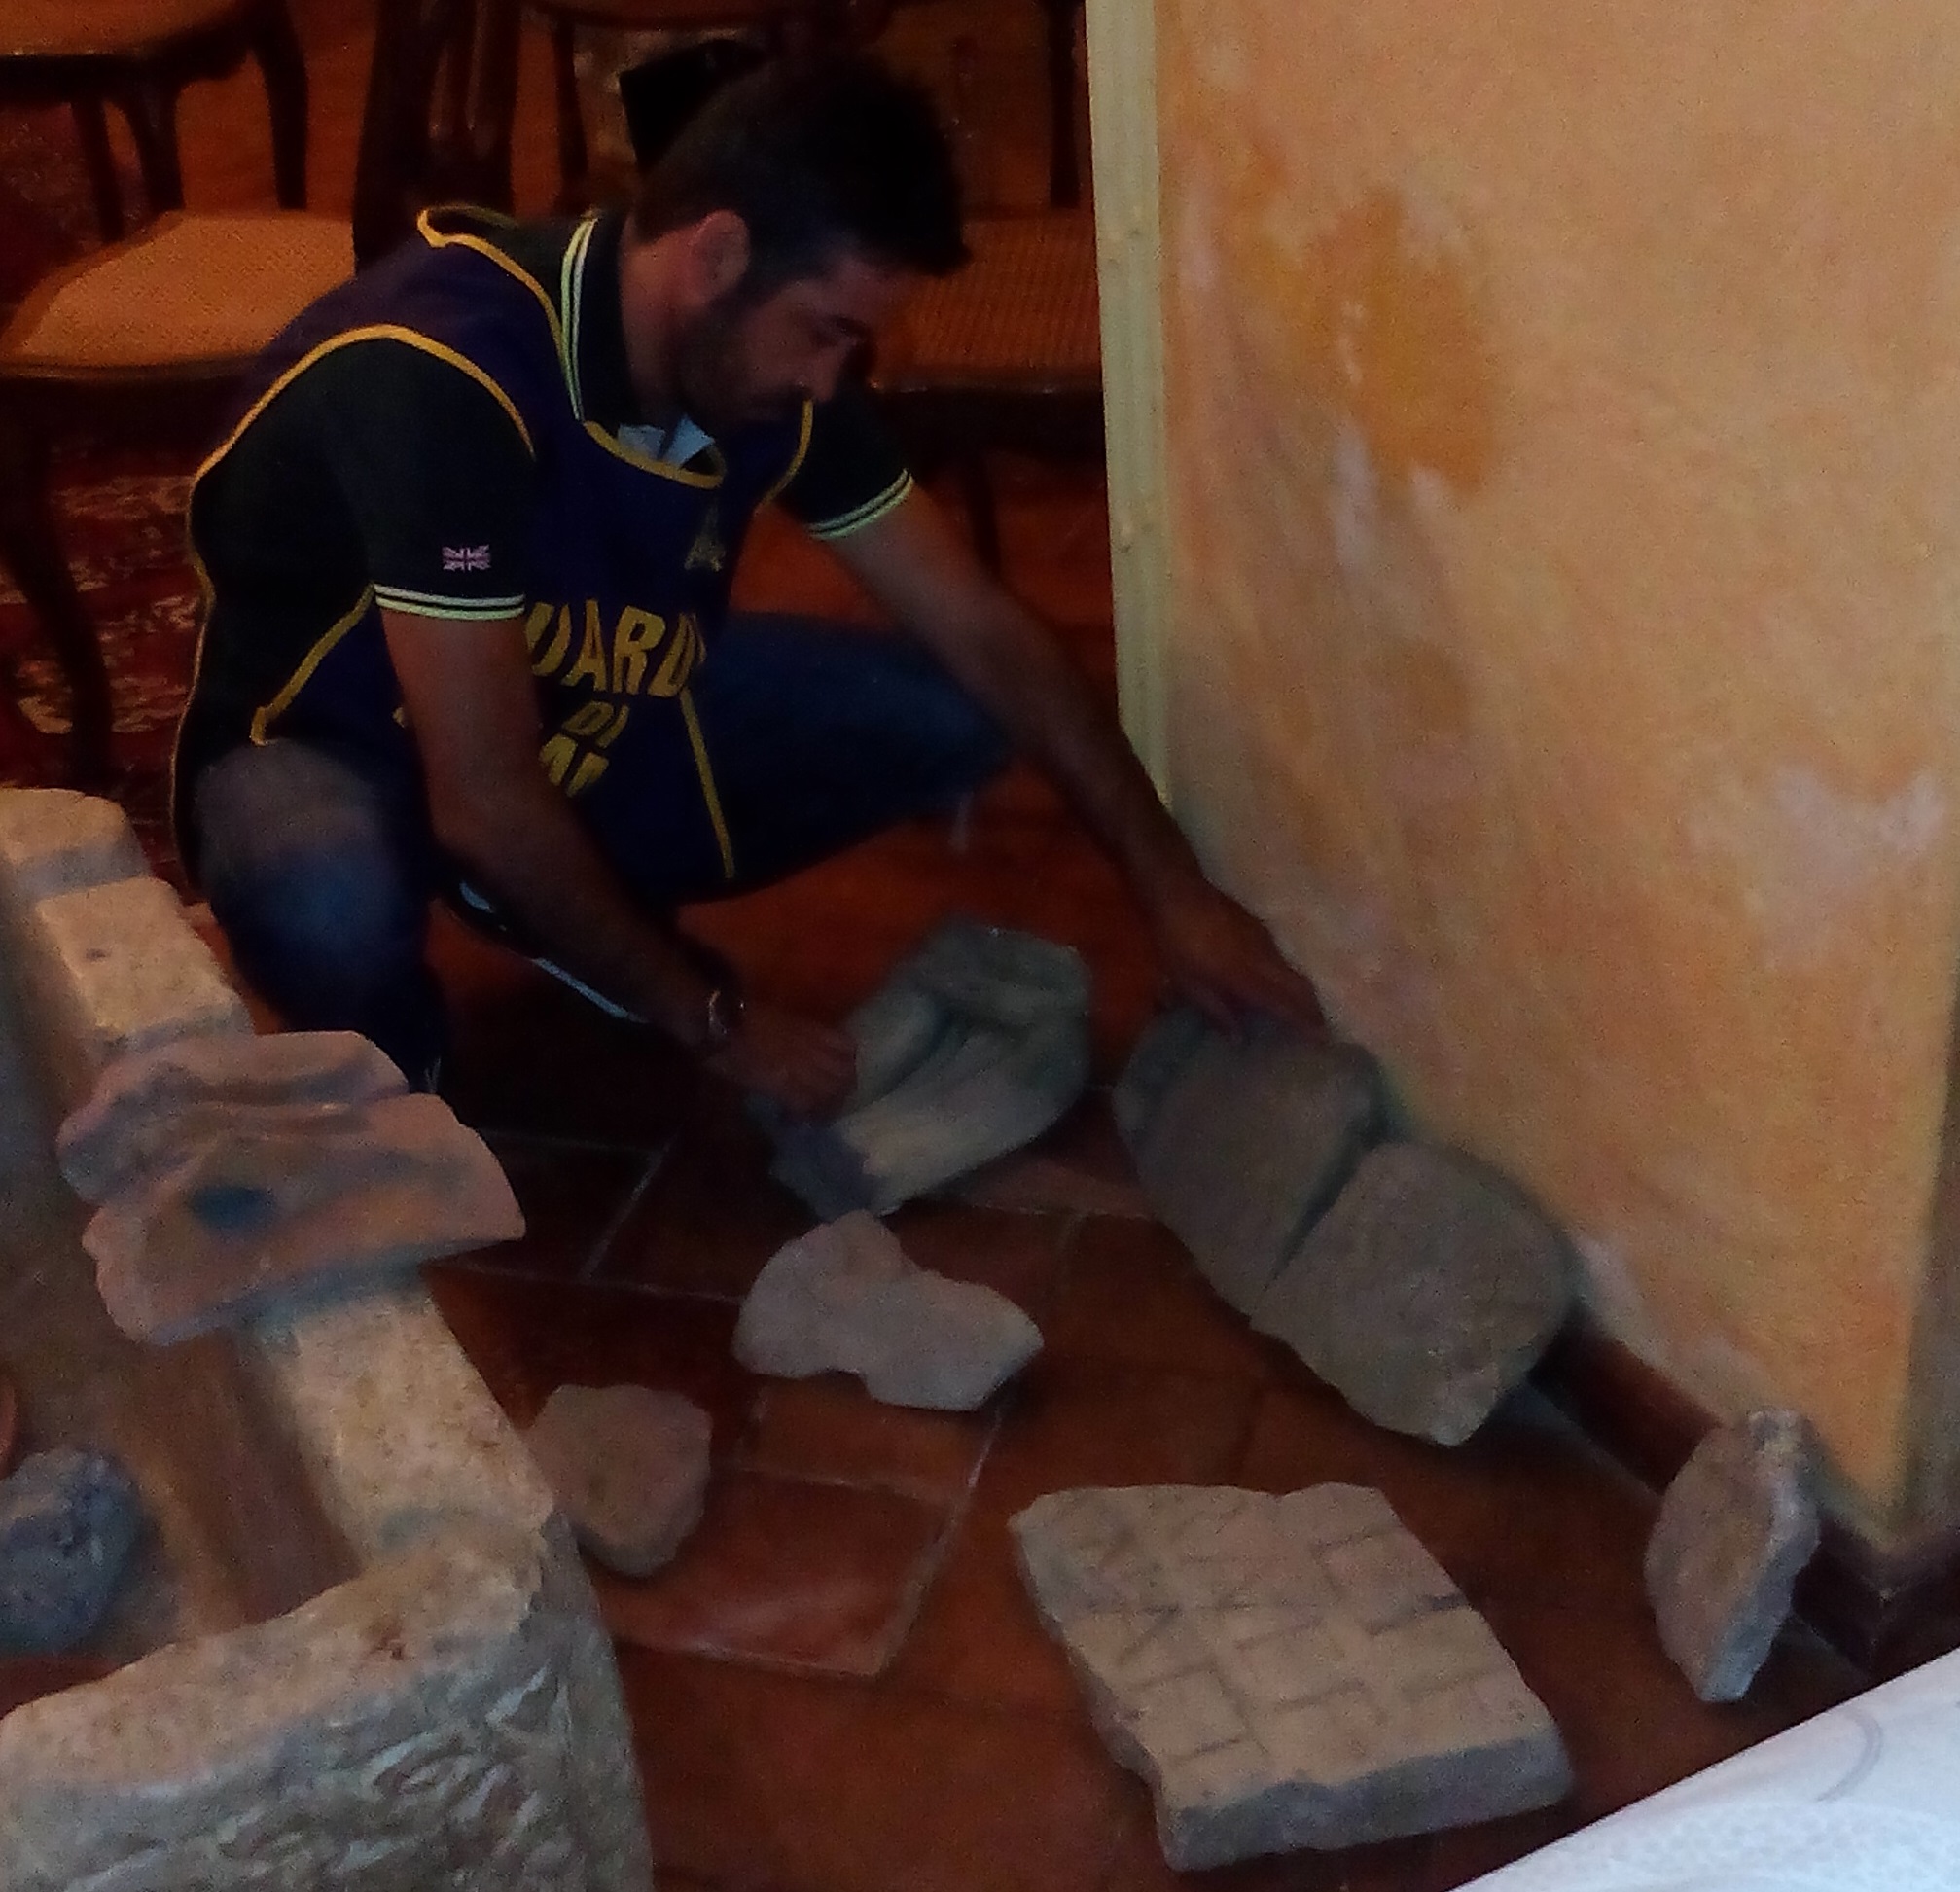  Operazione “Lanuvium”, recuperati reperti archeologici ai Castelli Romani: denunciate due donne di Lanuvio